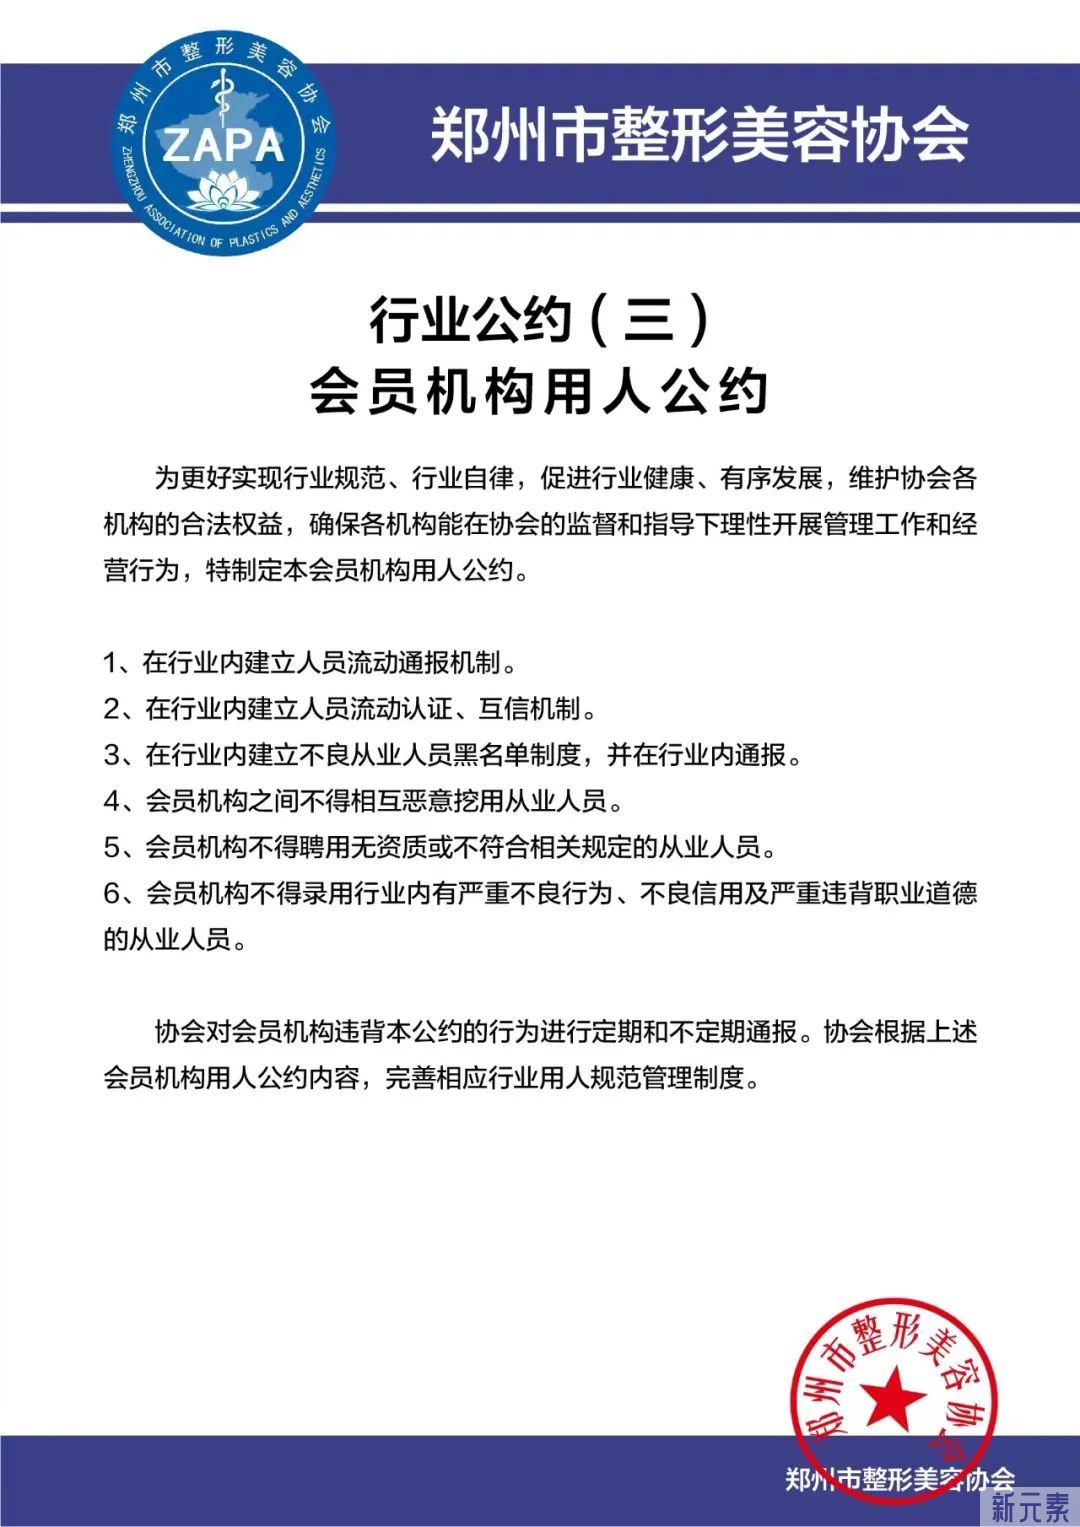 郑州市整形美容协会发布郑州市医疗美容行业自律公约 图片-5